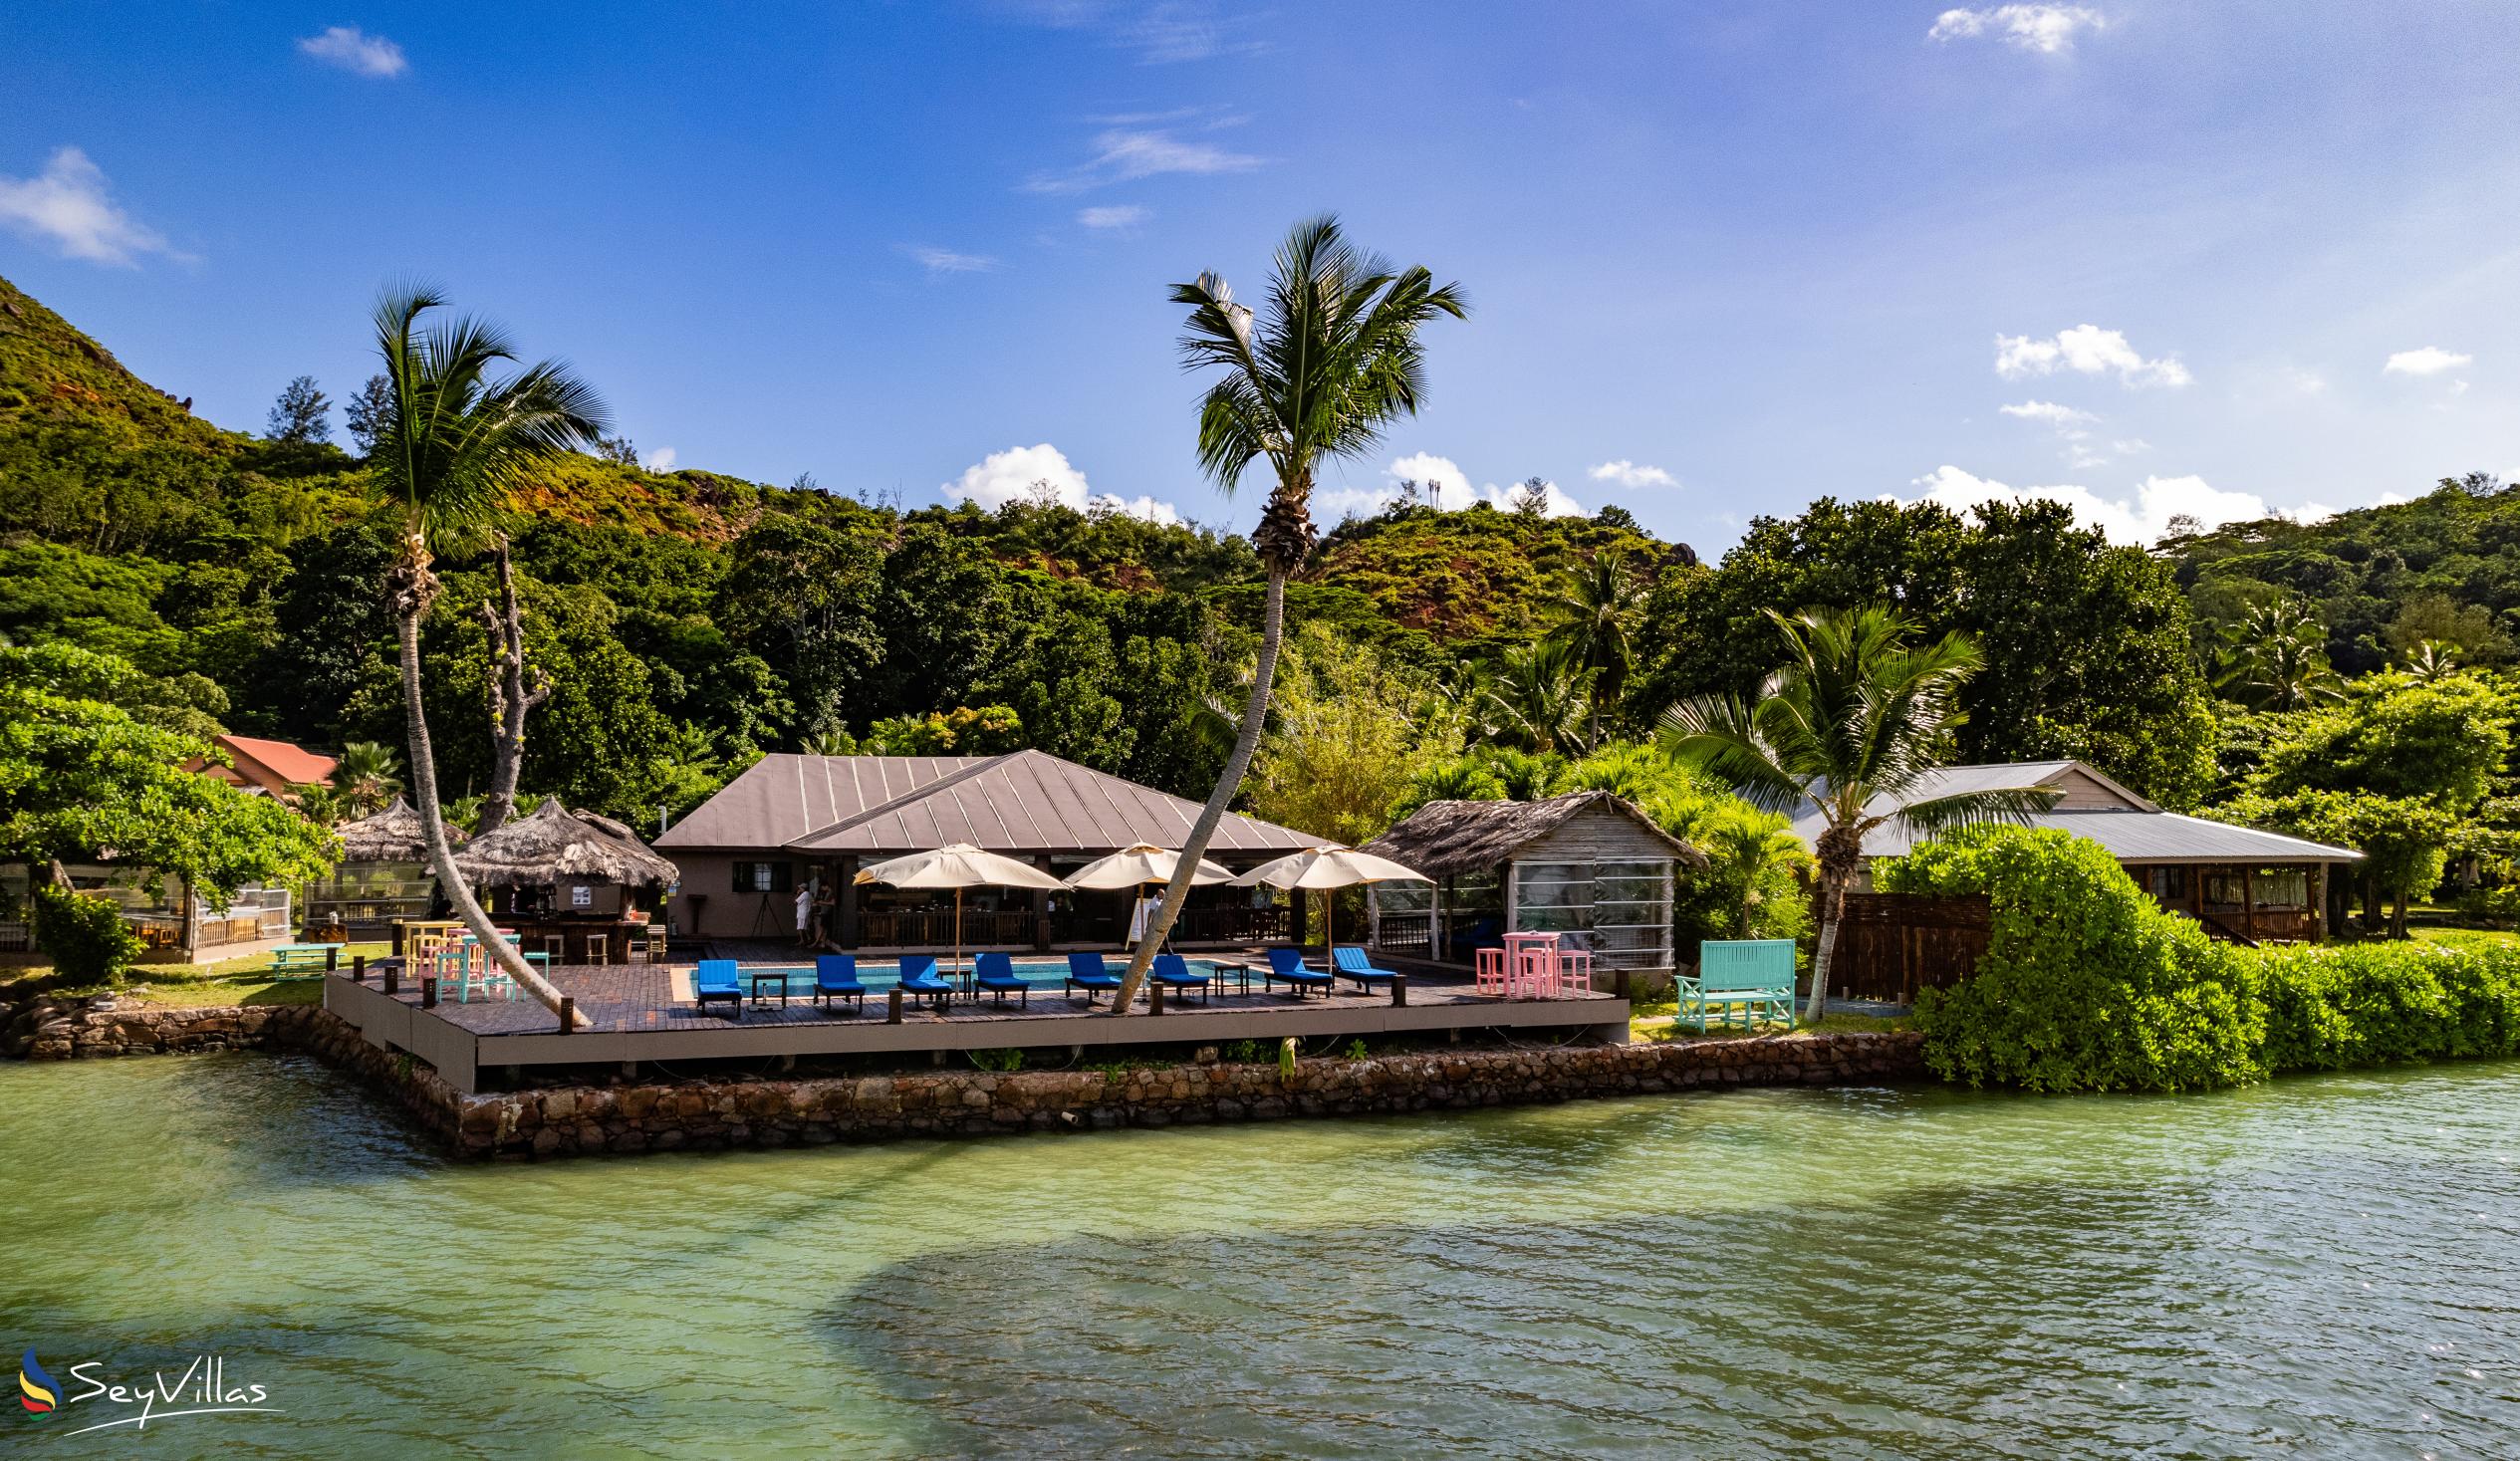 Photo 6: Le Vasseur La Buse Eco Resort - Outdoor area - Praslin (Seychelles)